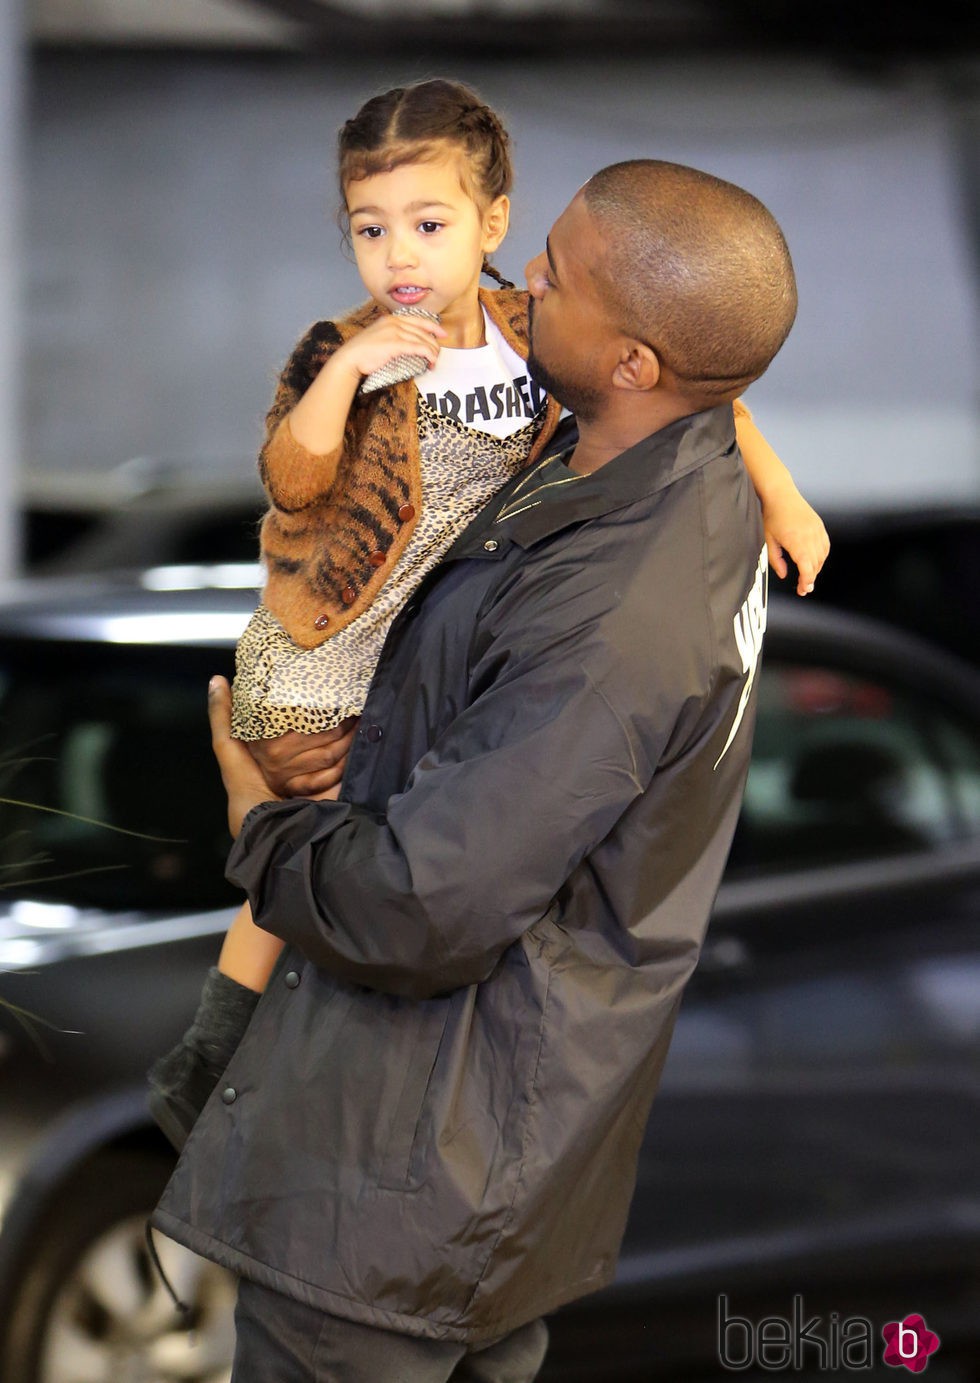 Kanye West mirando de forma cariñosa a su hija North West en un centro comercial en Los Ángeles